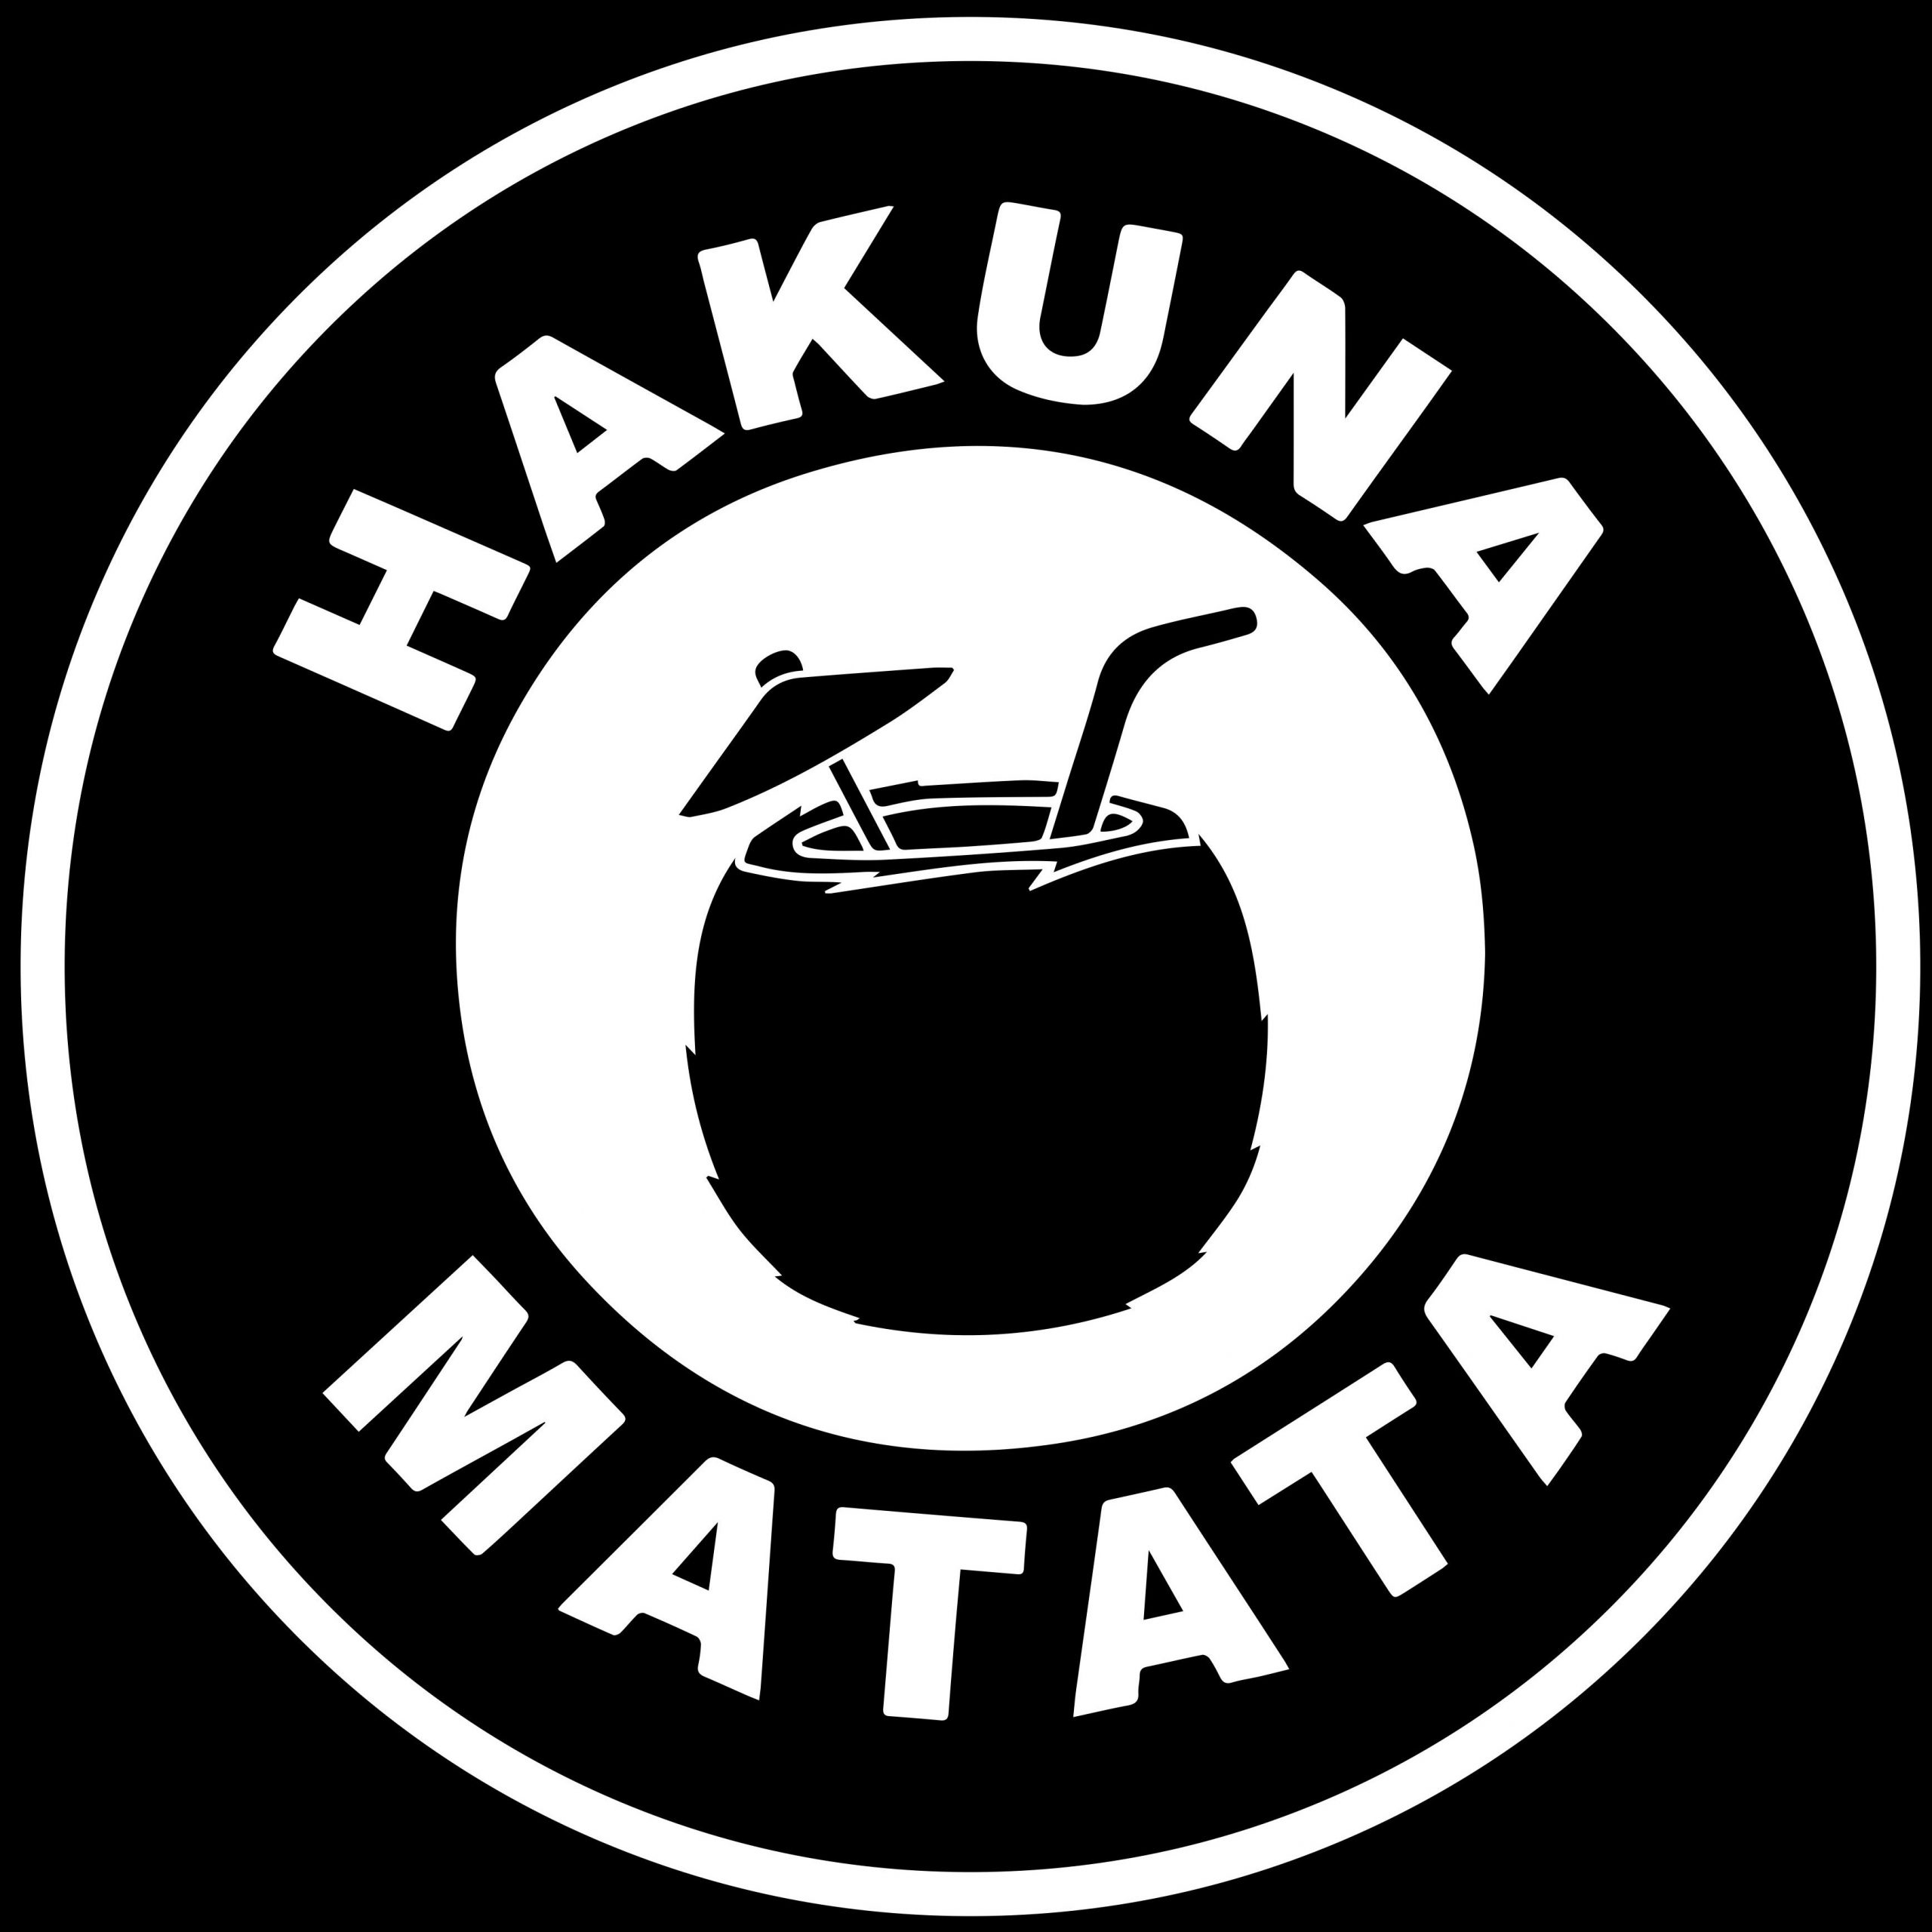 Hakuna Matata - Whetstone